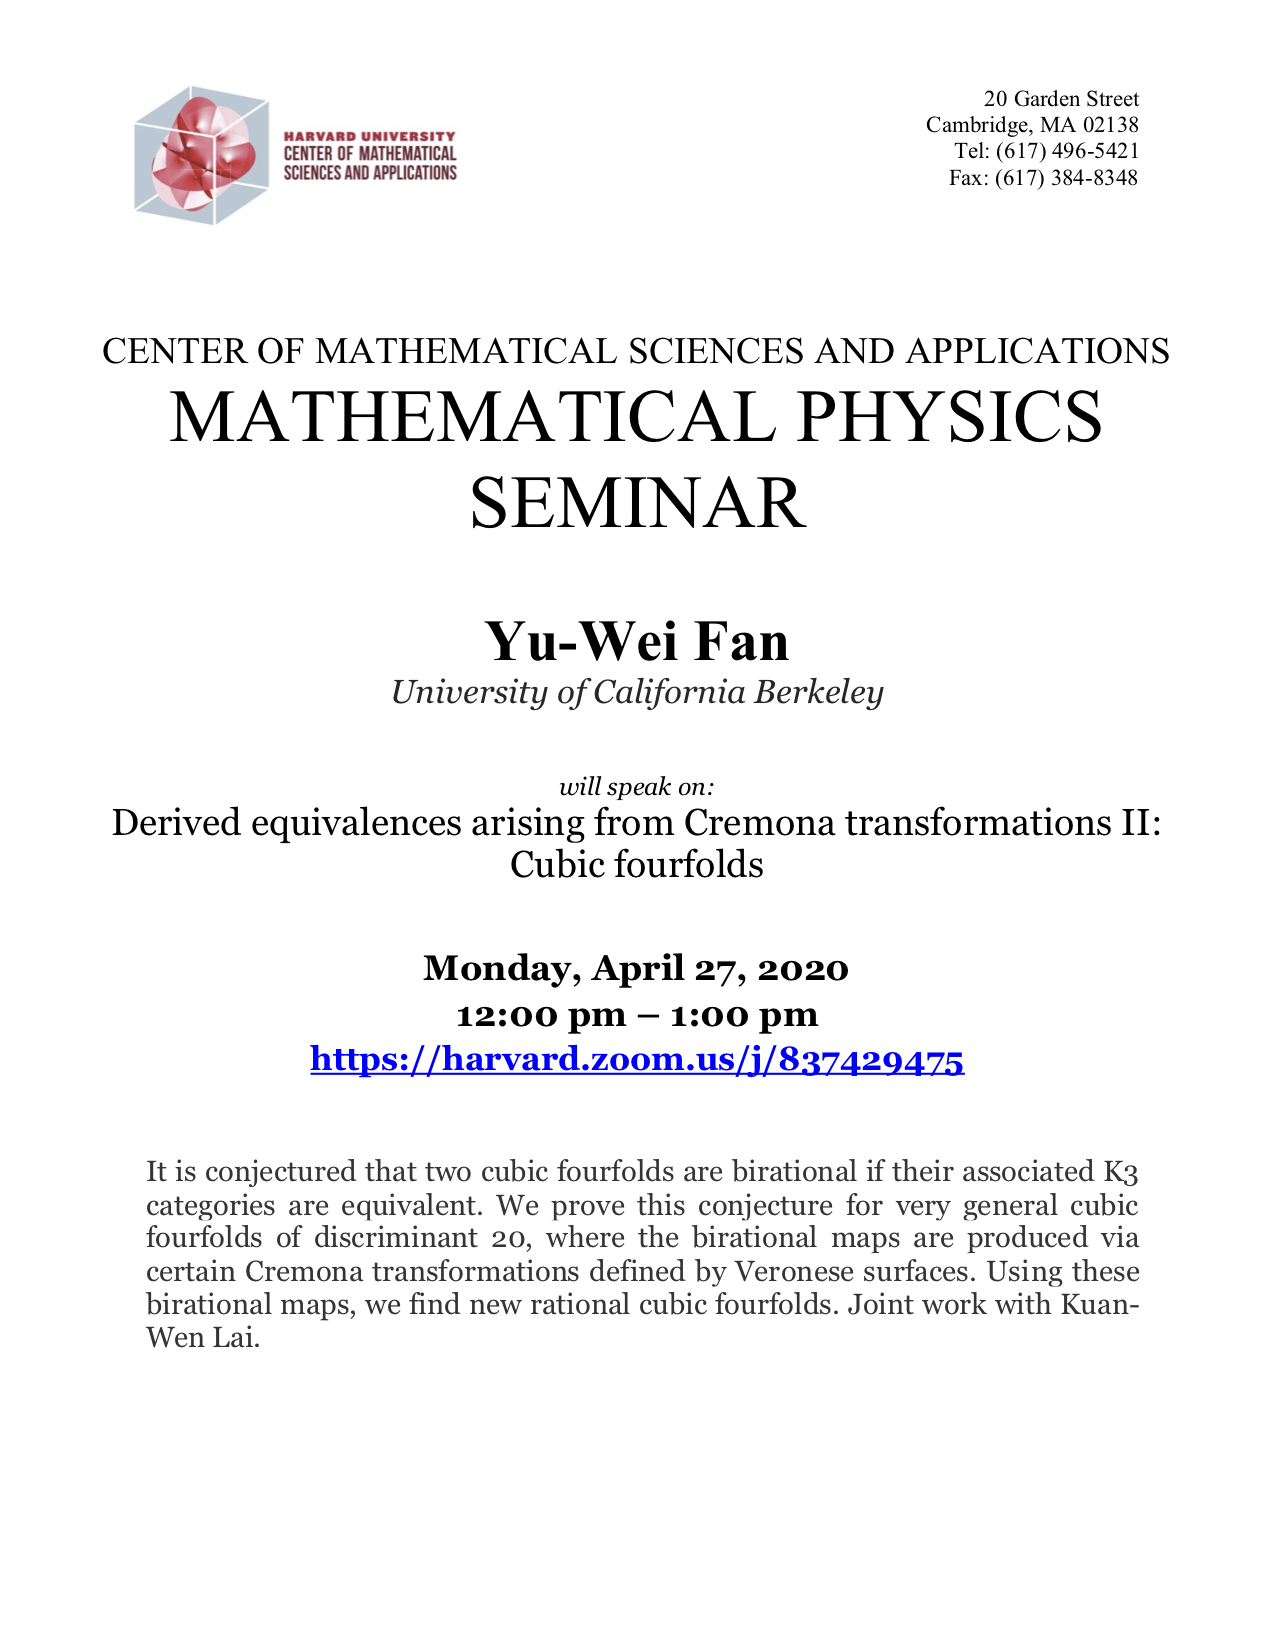 CMSA-Mathematical-Physics-04.27.20